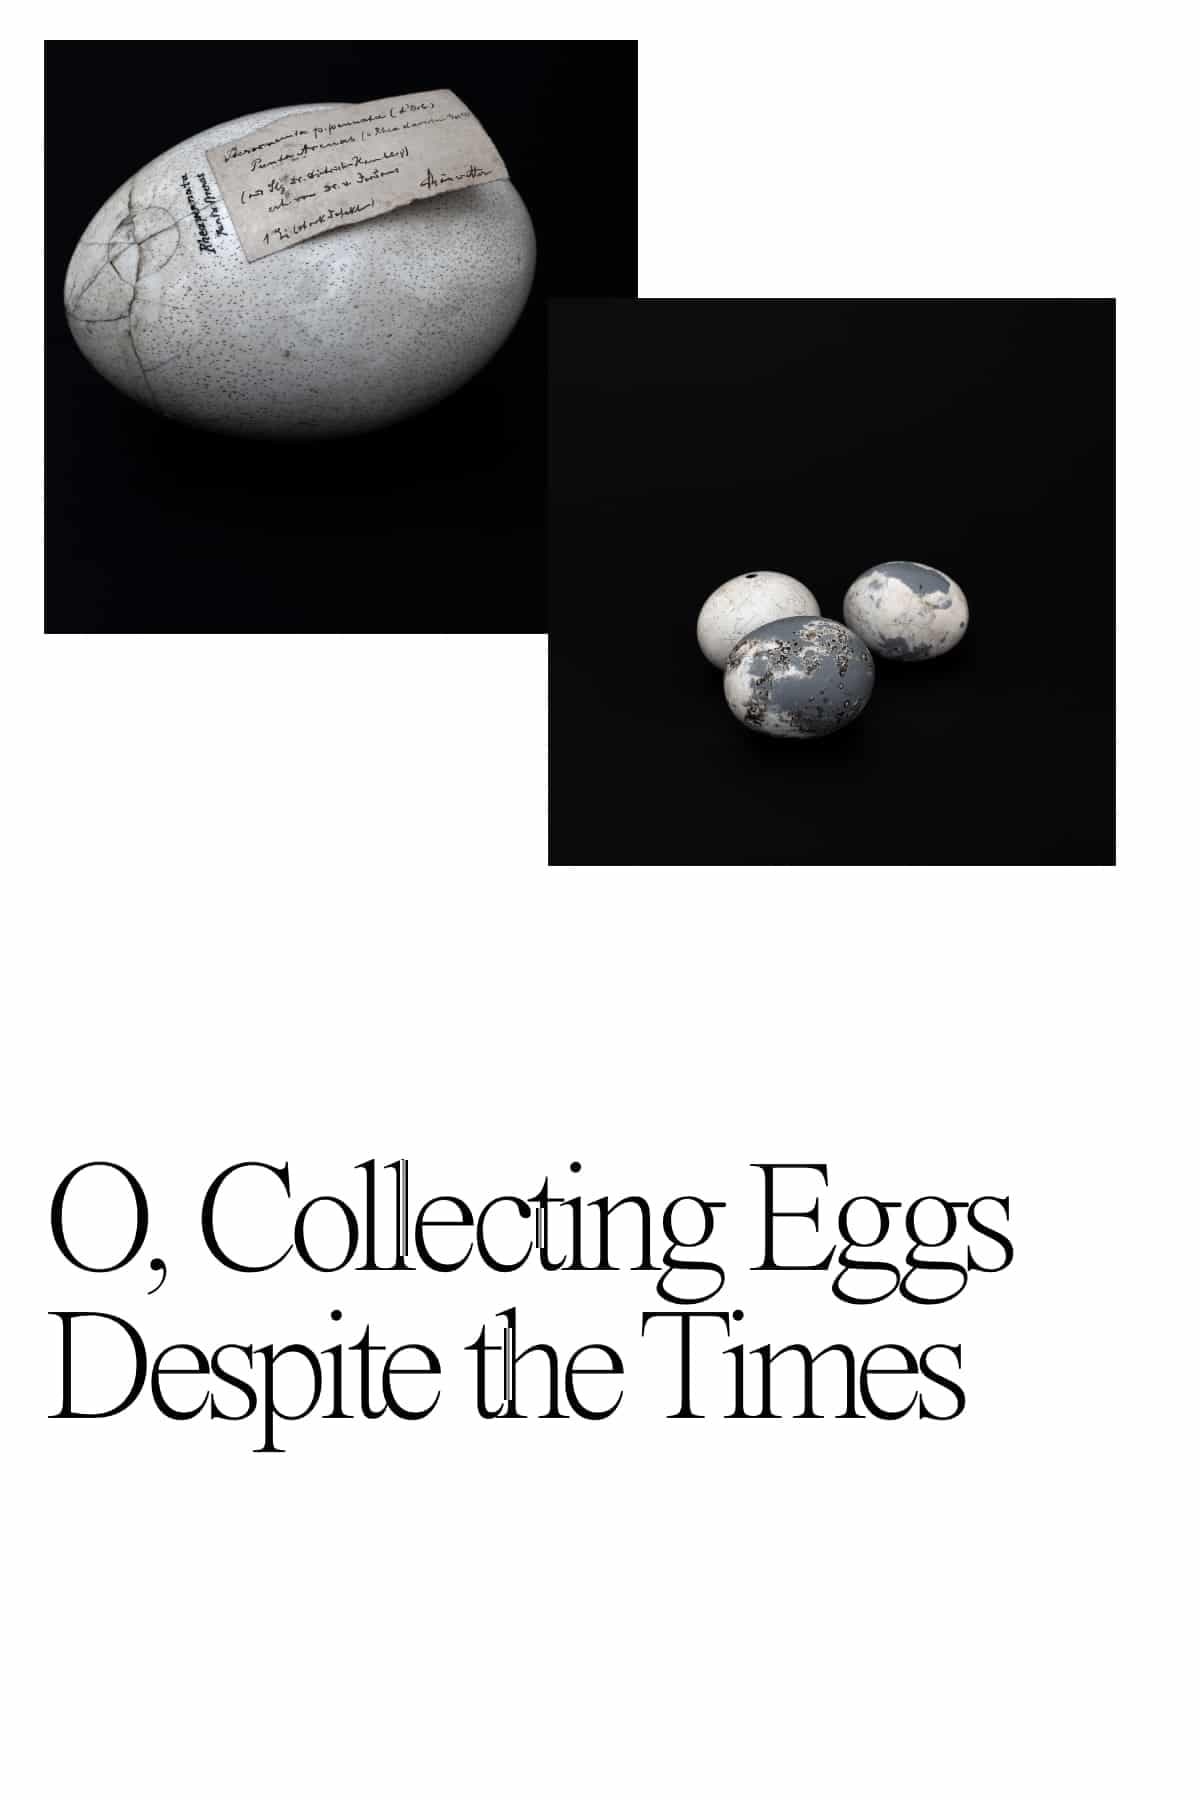 O, Collecting Eggs Despite the Times